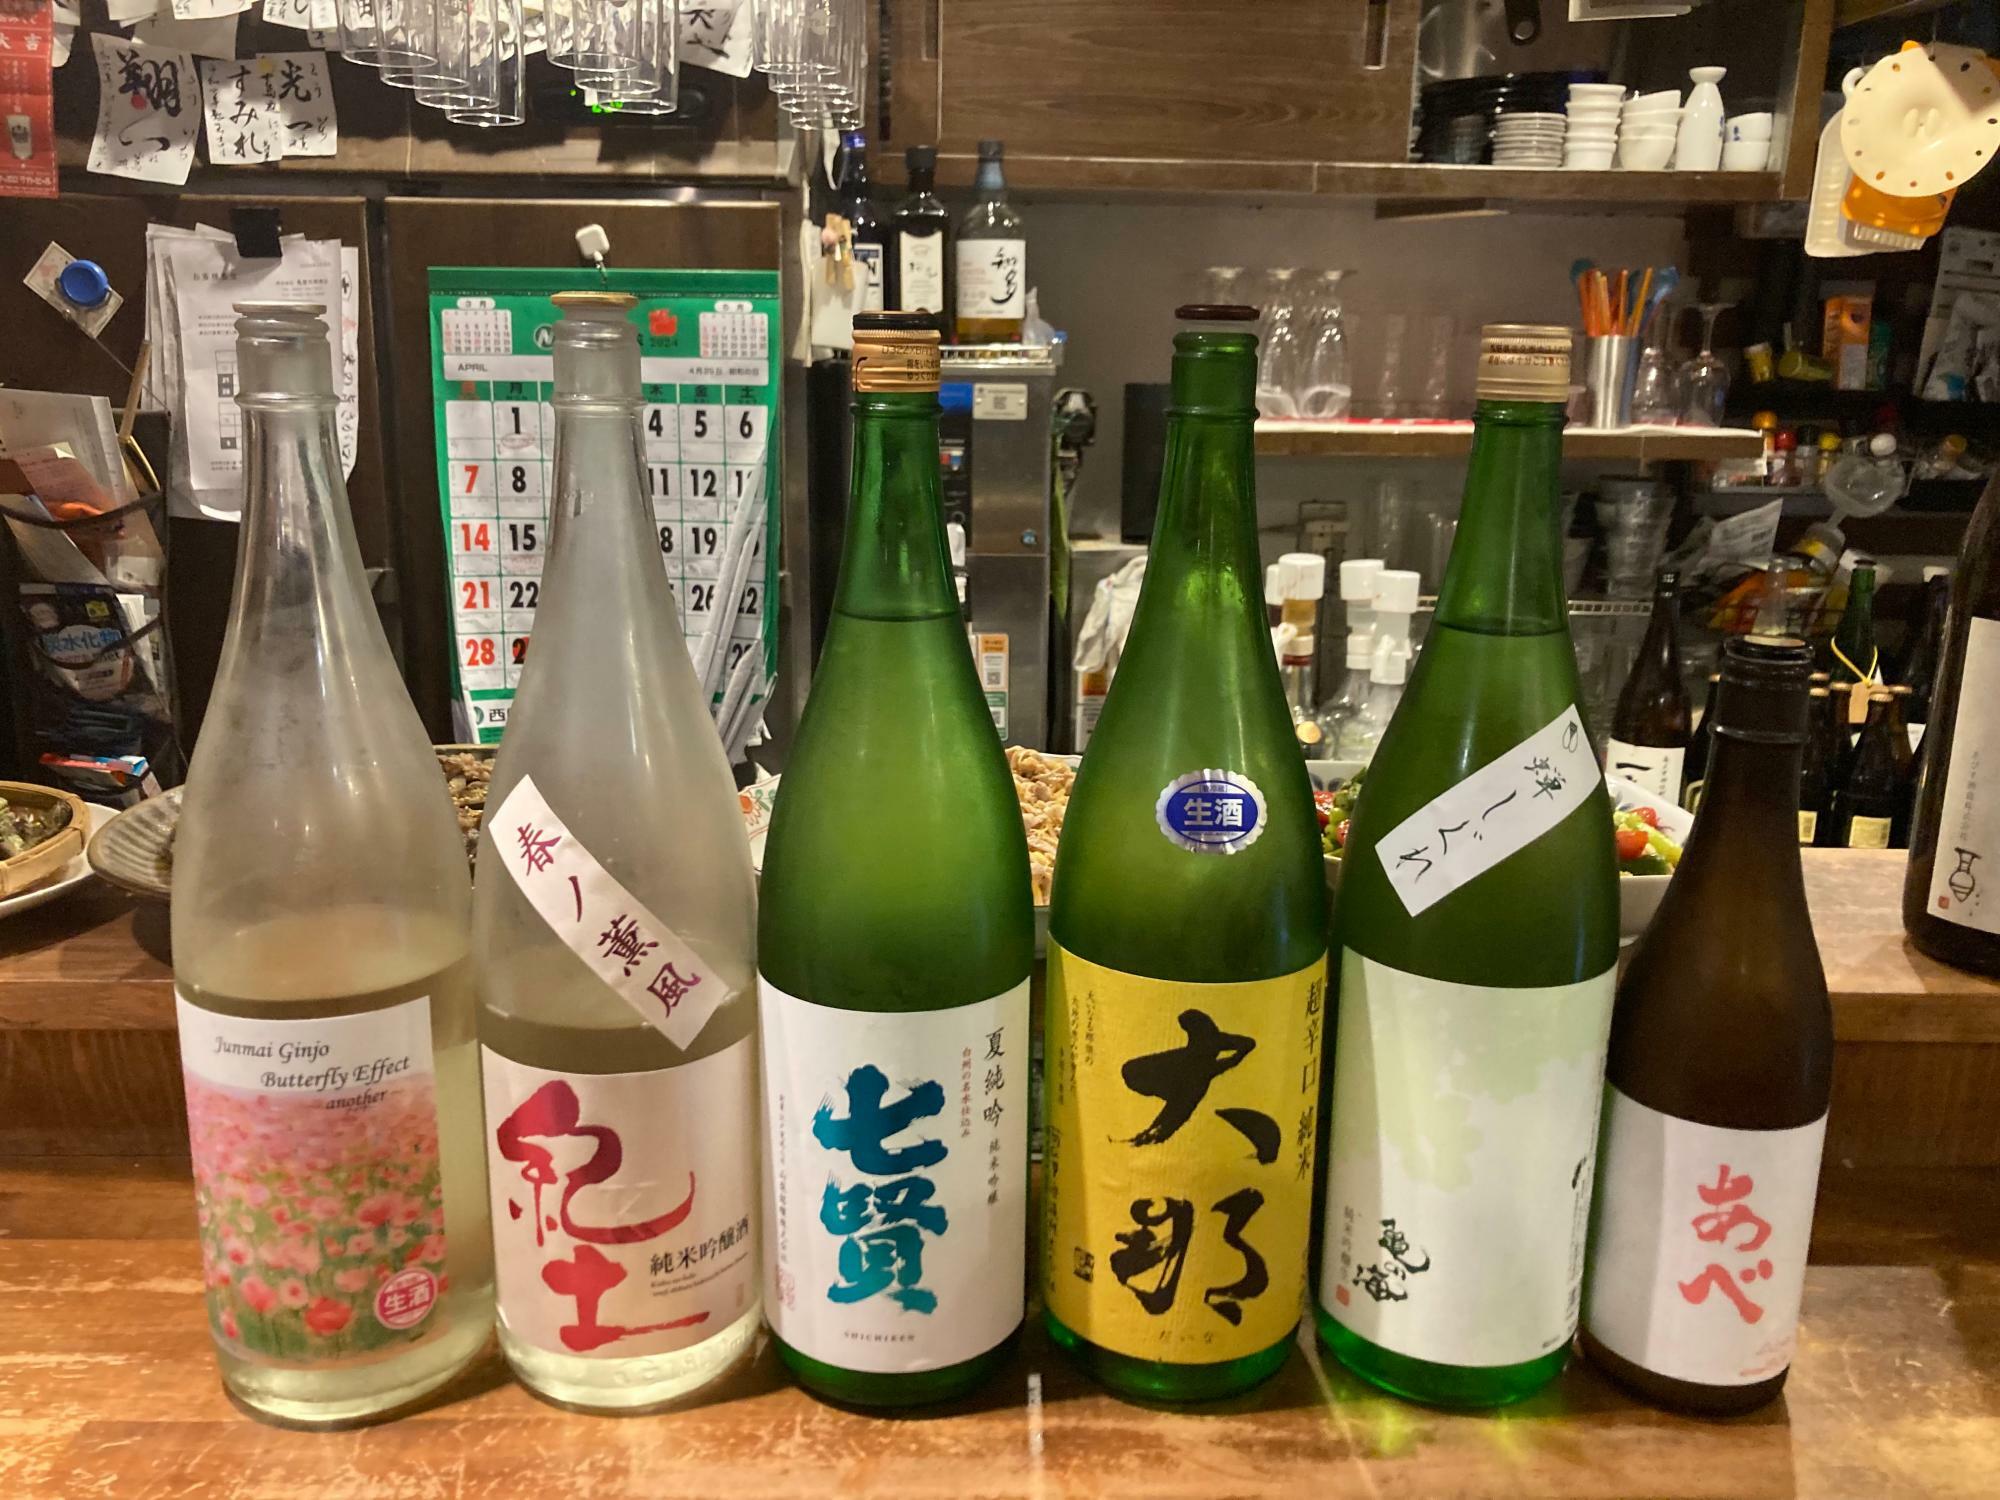 日本酒も季節ごとの名酒を取り揃えている。仕入れ先は多摩市にある地酒の名門「小山商店」からと聞いて、ますます溜飲が下がる。